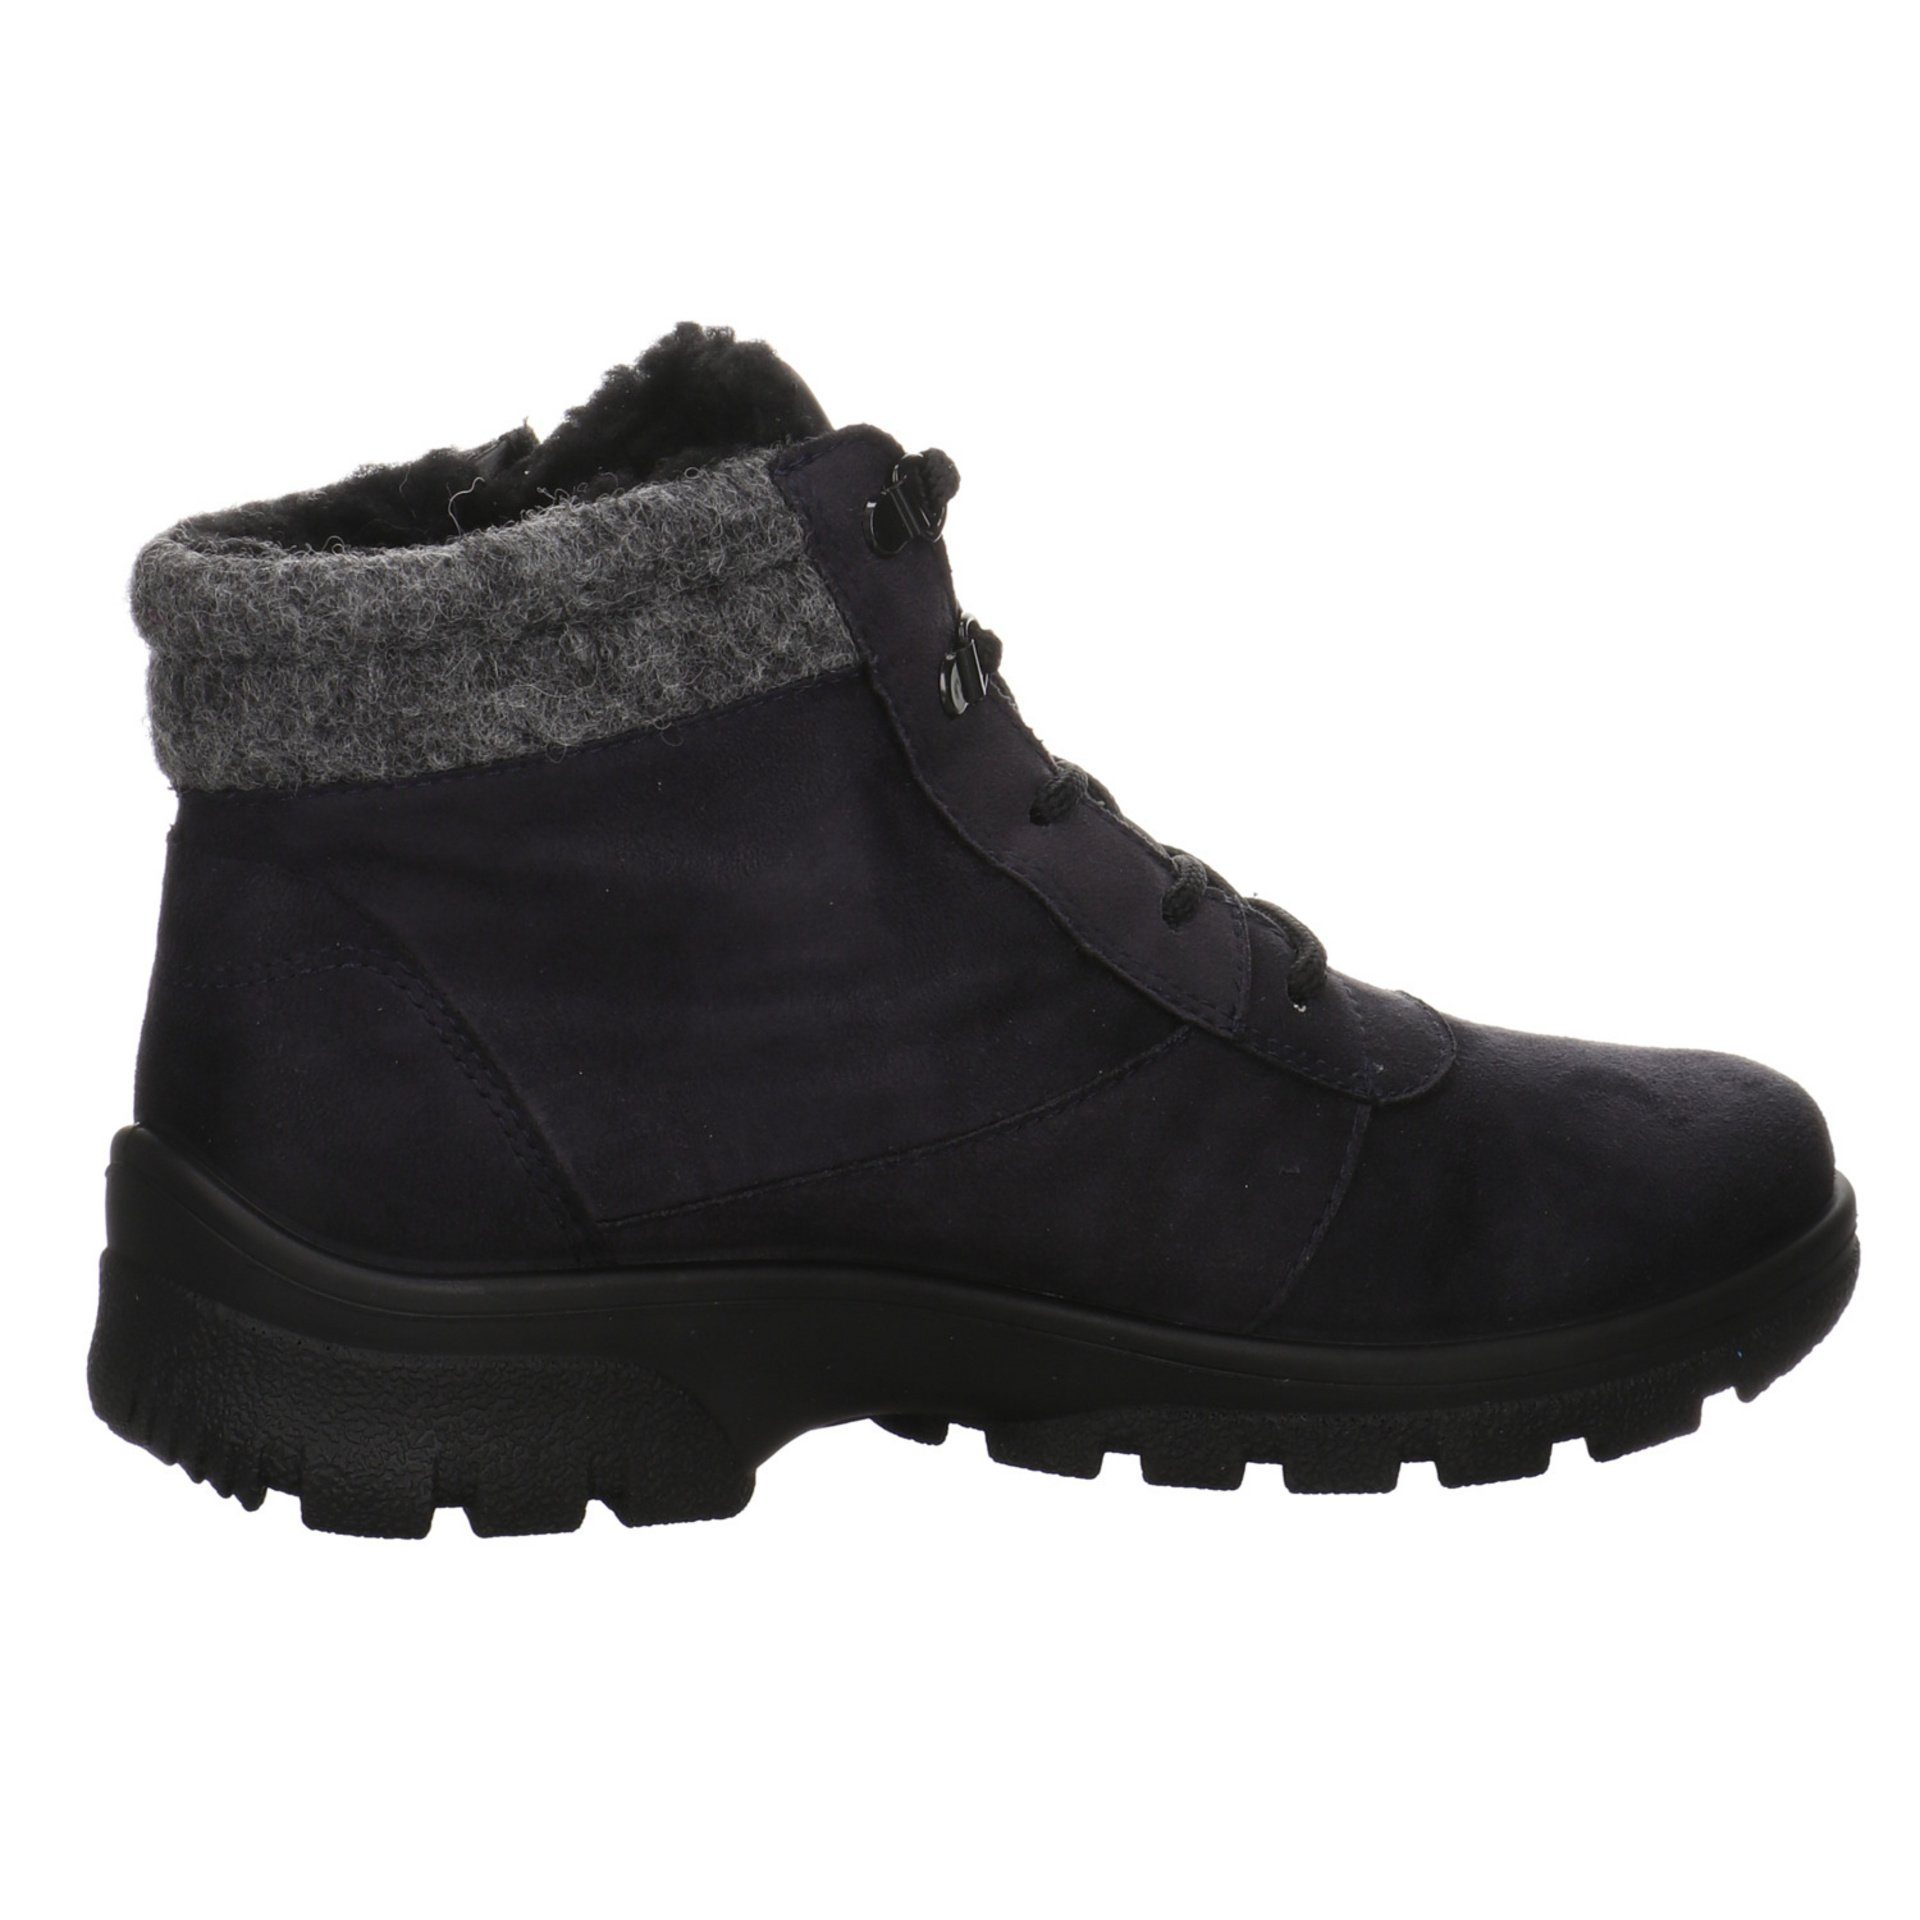 Snowboots Schuhe Snowboots blau/grau/schwarz Damen Leder-/Textilkombination Saas-Fee Ara Boots